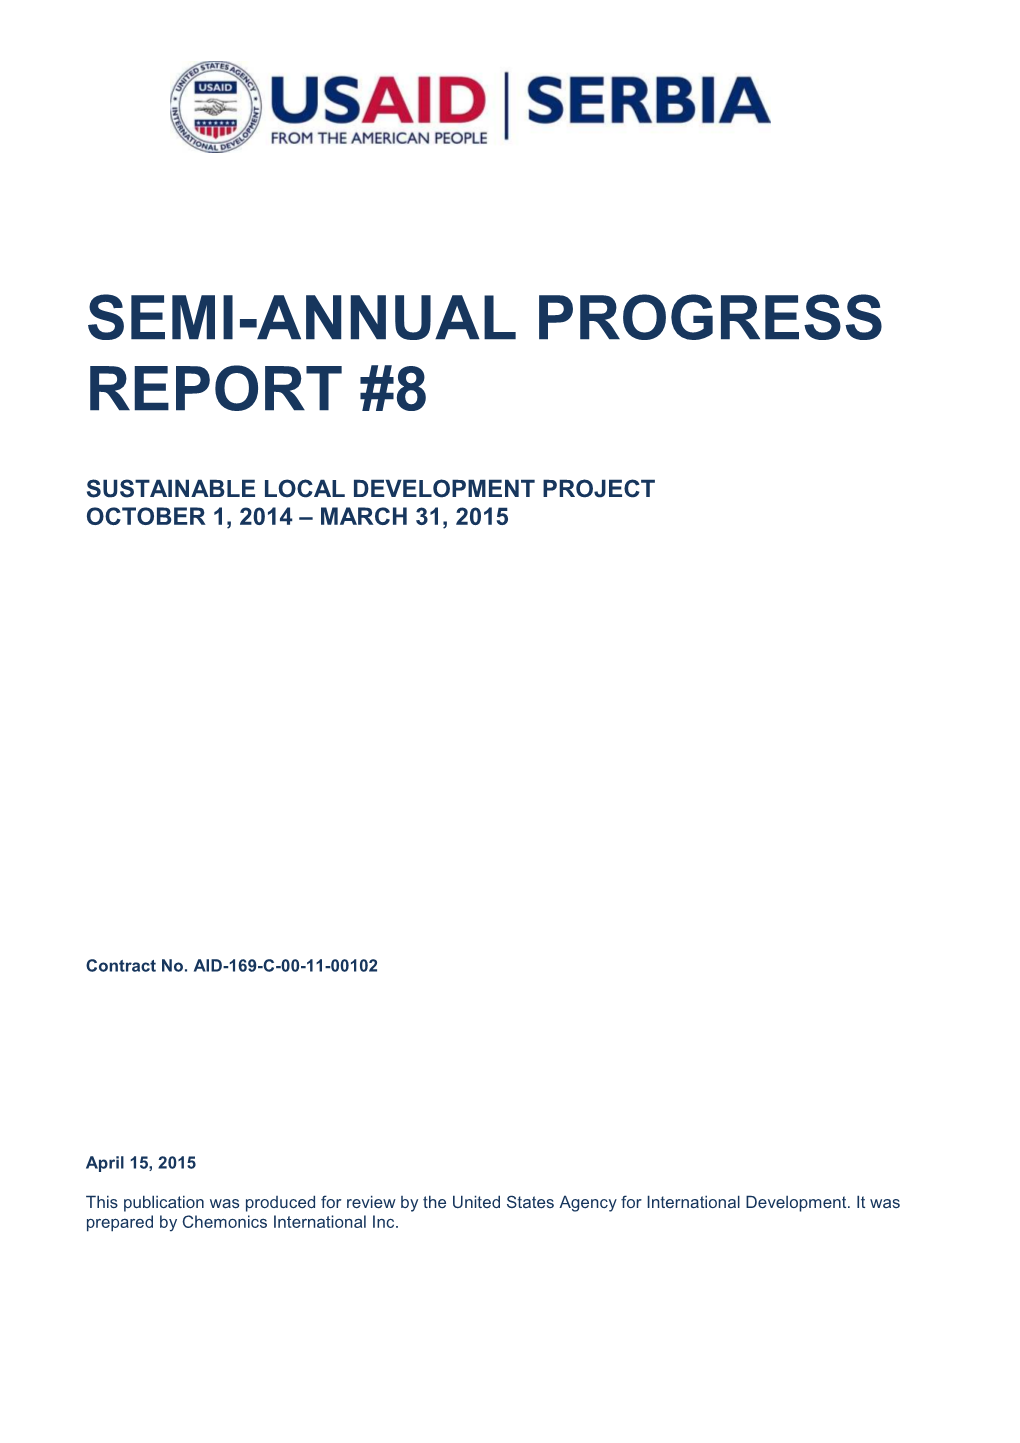 Semi-Annual Progress Report #8